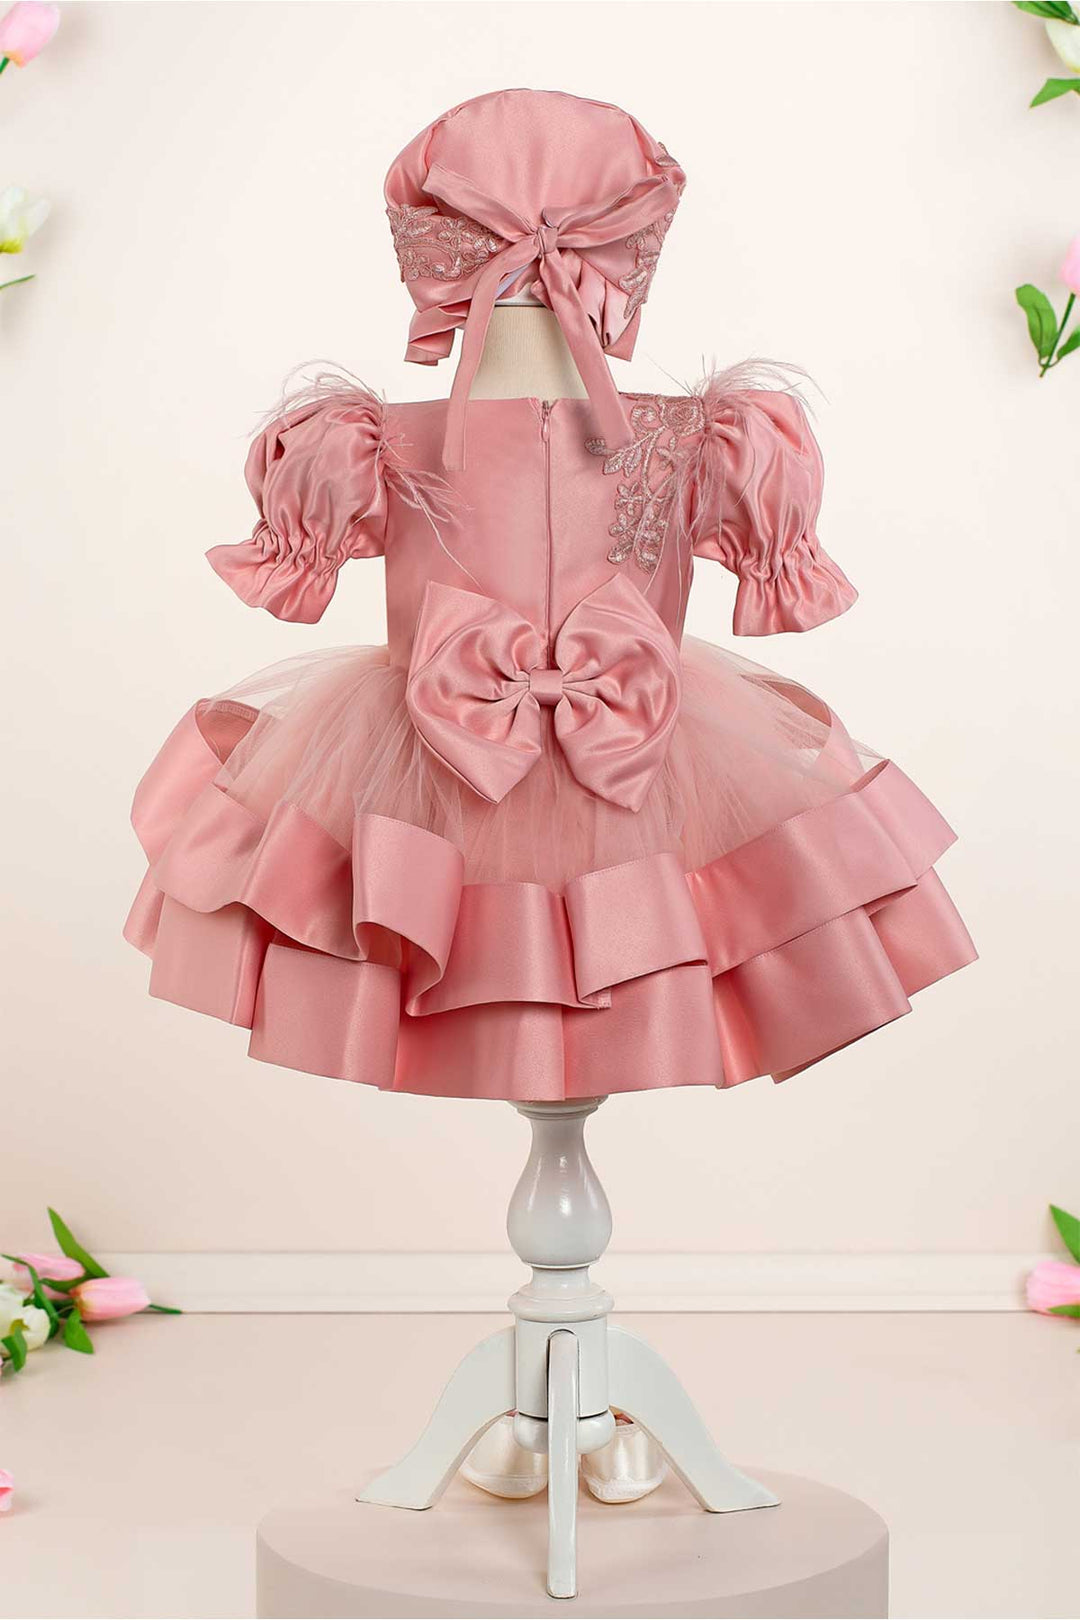 Linda Pink Baby Dress Set